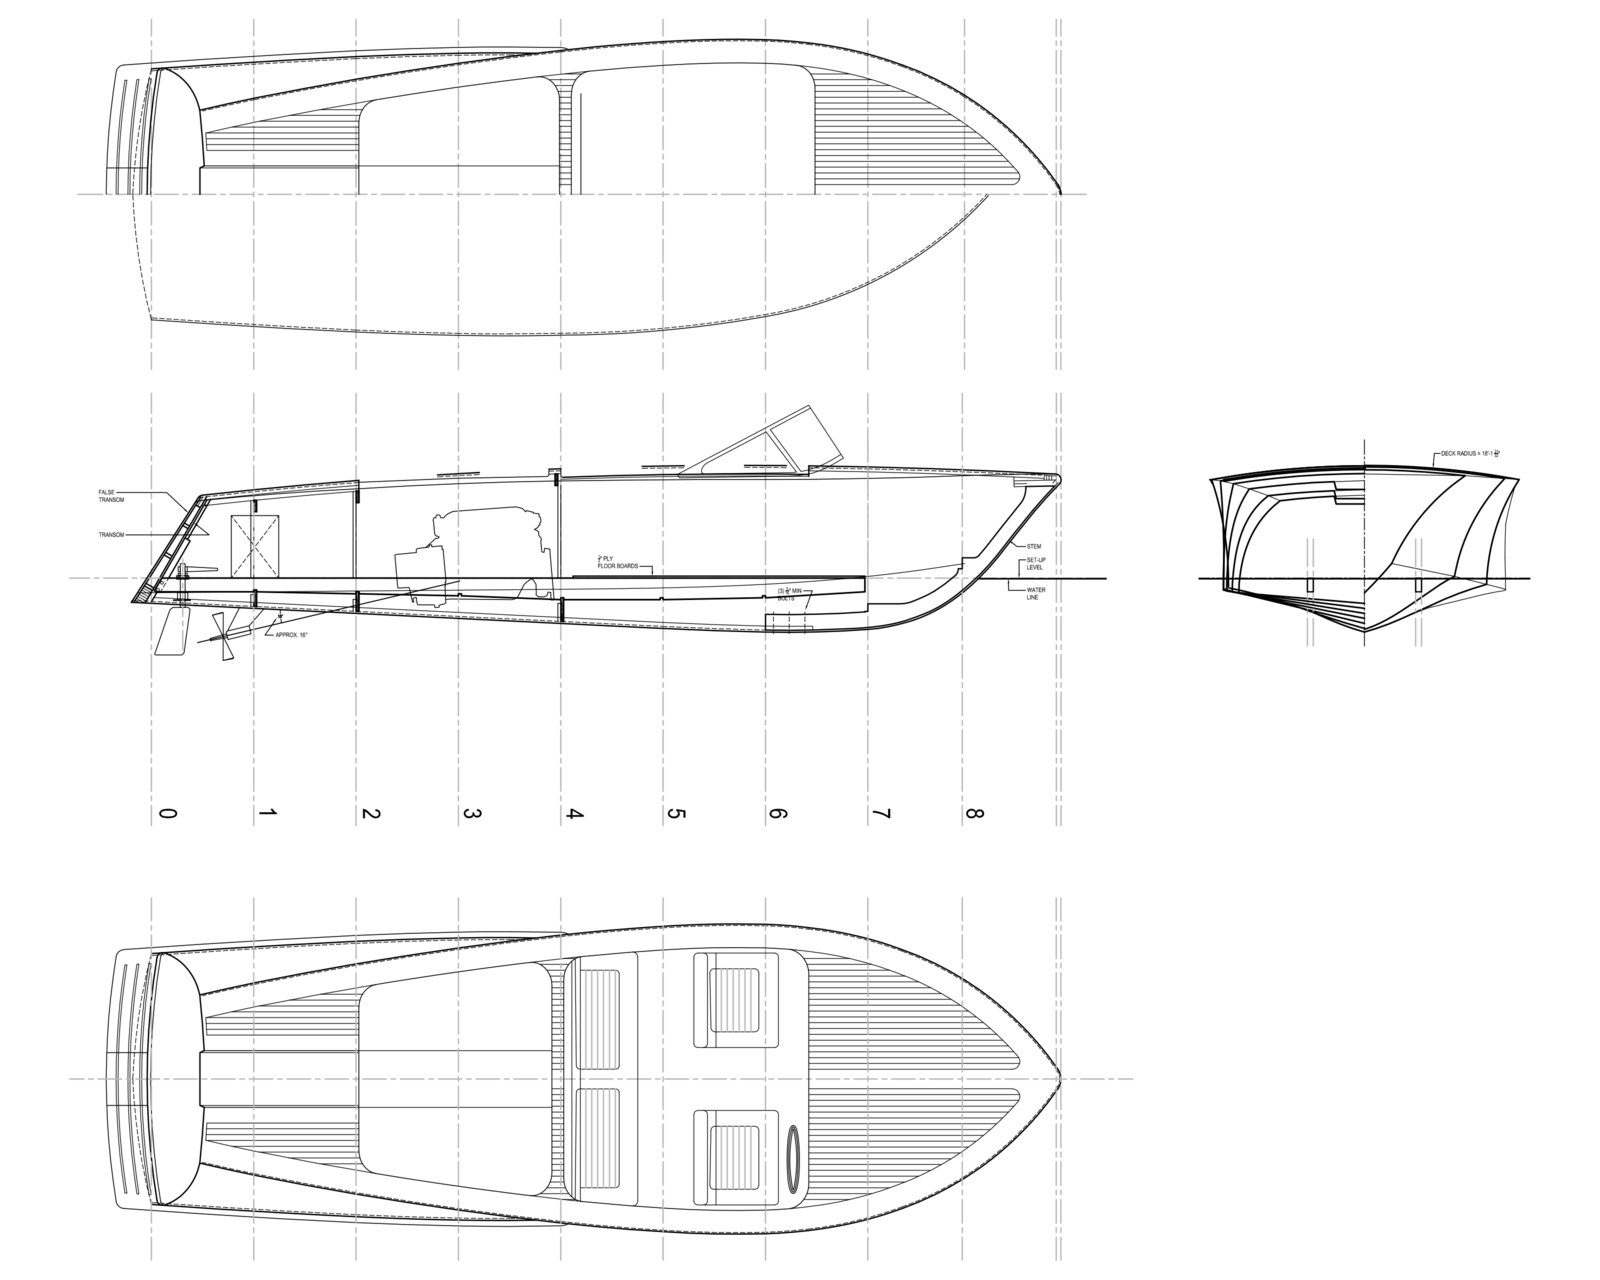 sbruns boat plans.jpg